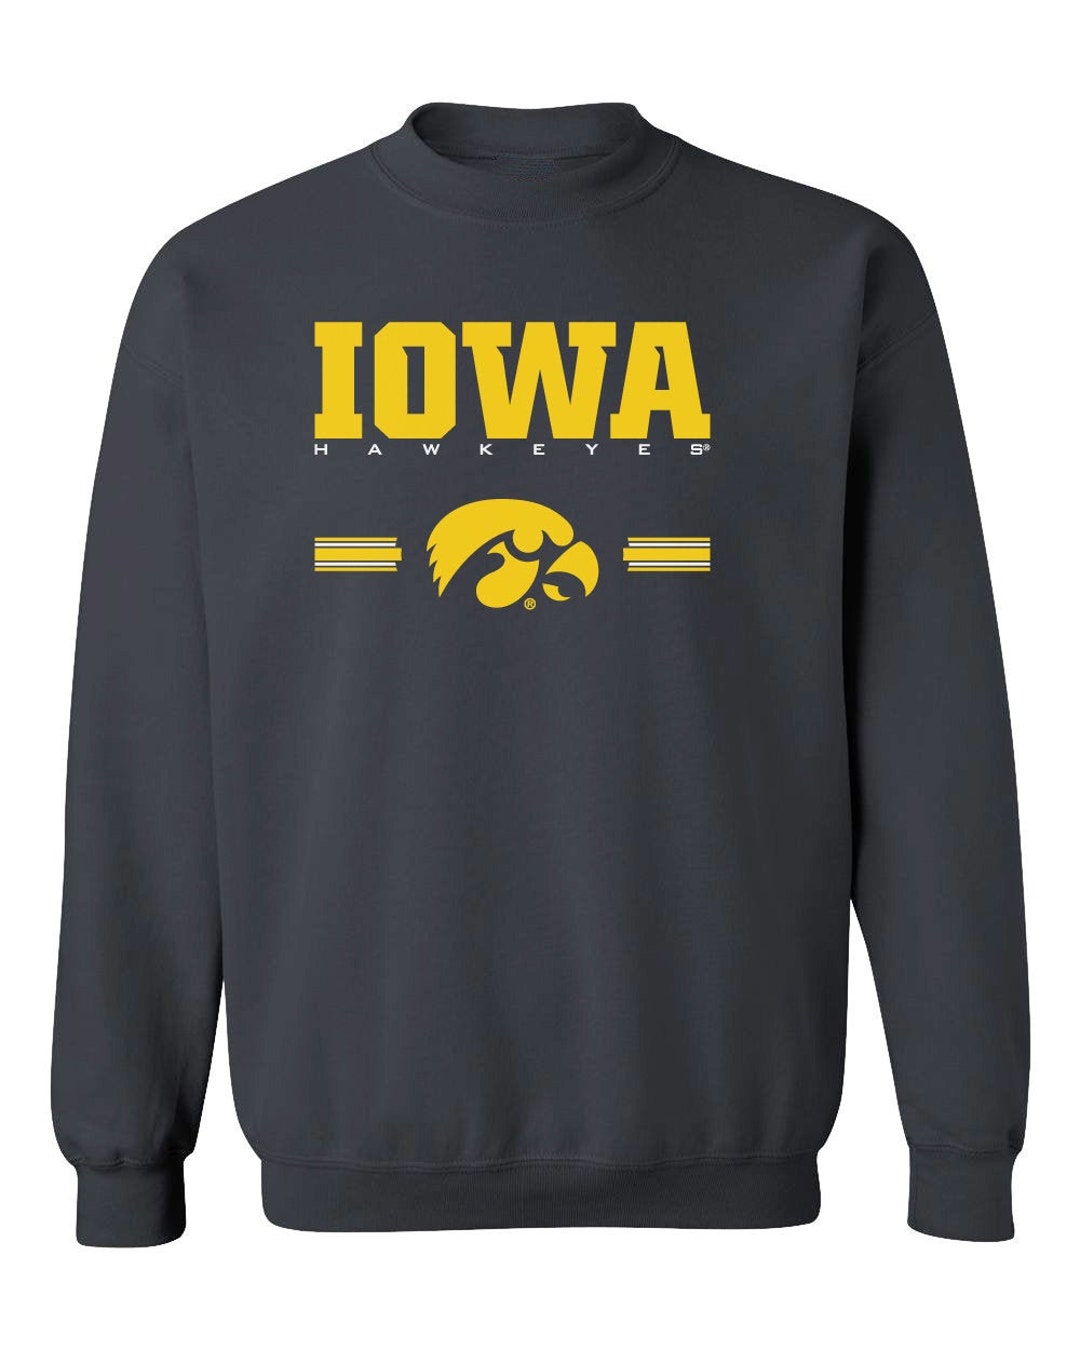 Iowa Hawkeyes Sweatshirt Horiz Stripe With Tigerhawk Iowa - Etsy